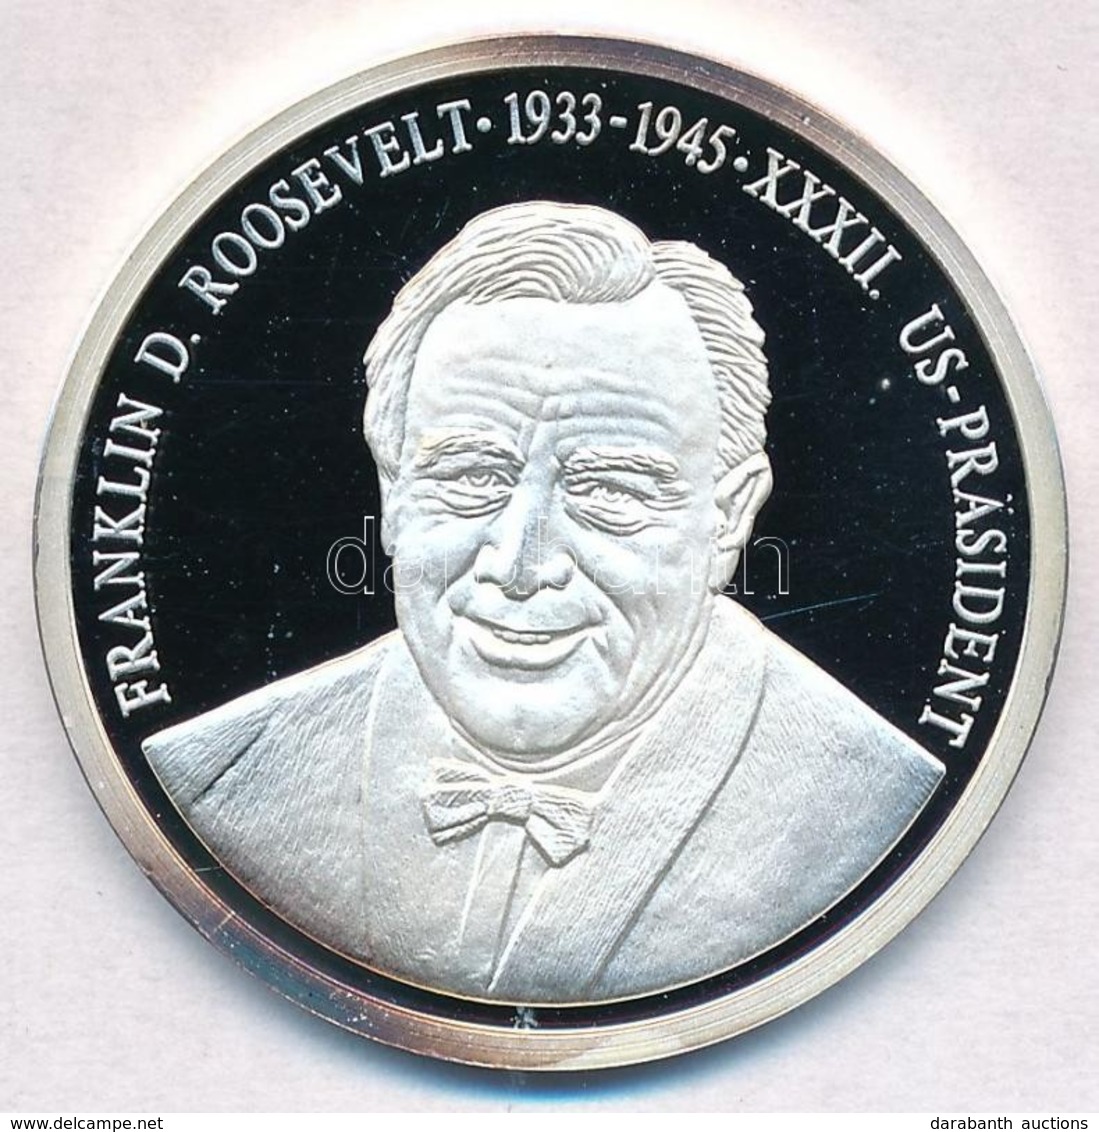 Németország 1992. 'Franklin D. Roosevelt - Az Amerika Egyesült Államok Elnökei' Jelzett Ag Emlékérem, Tanúsítvánnyal (15 - Unclassified